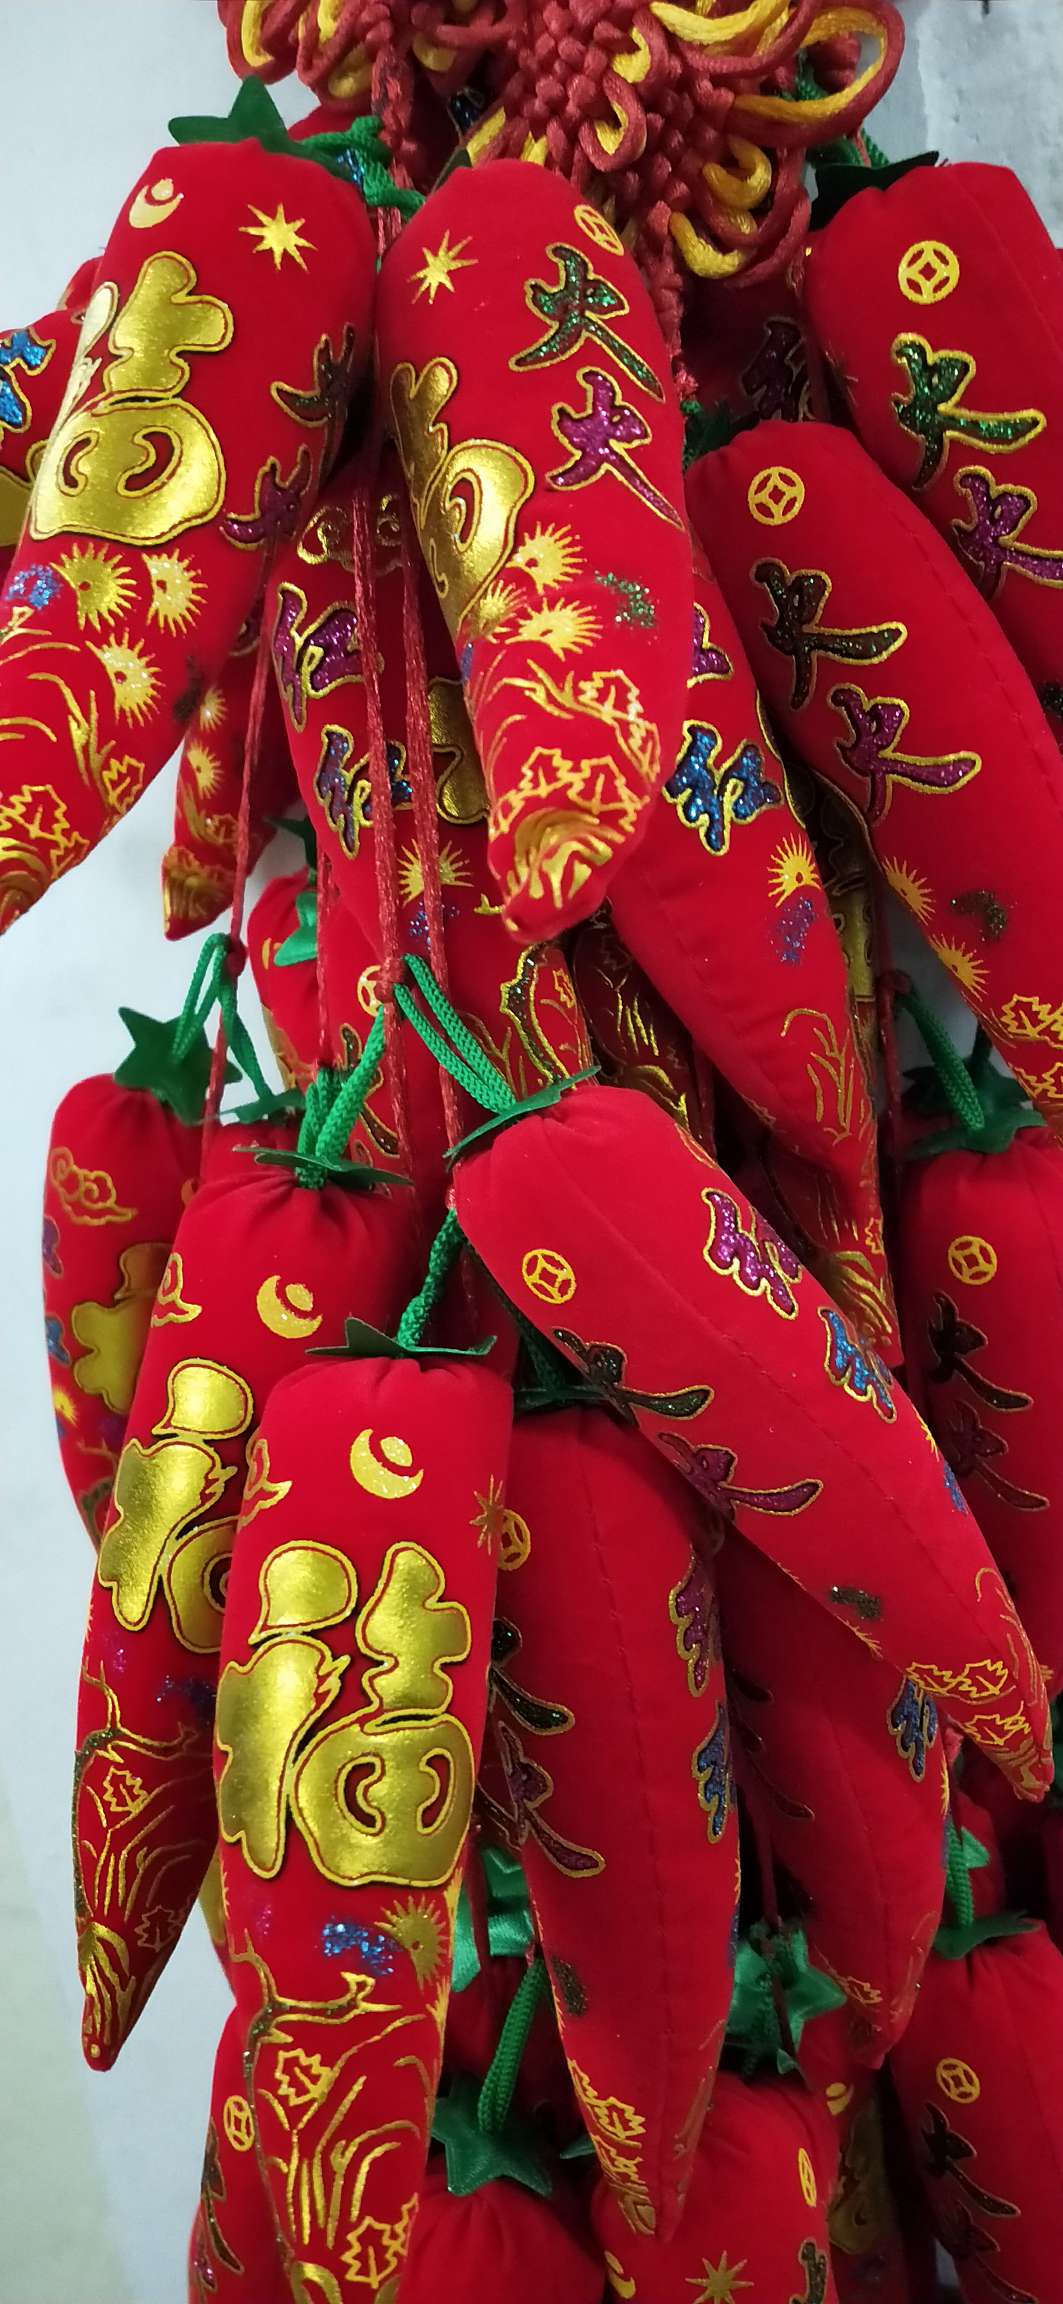 中国结挂串之烫金福16头红火辣椒产品图